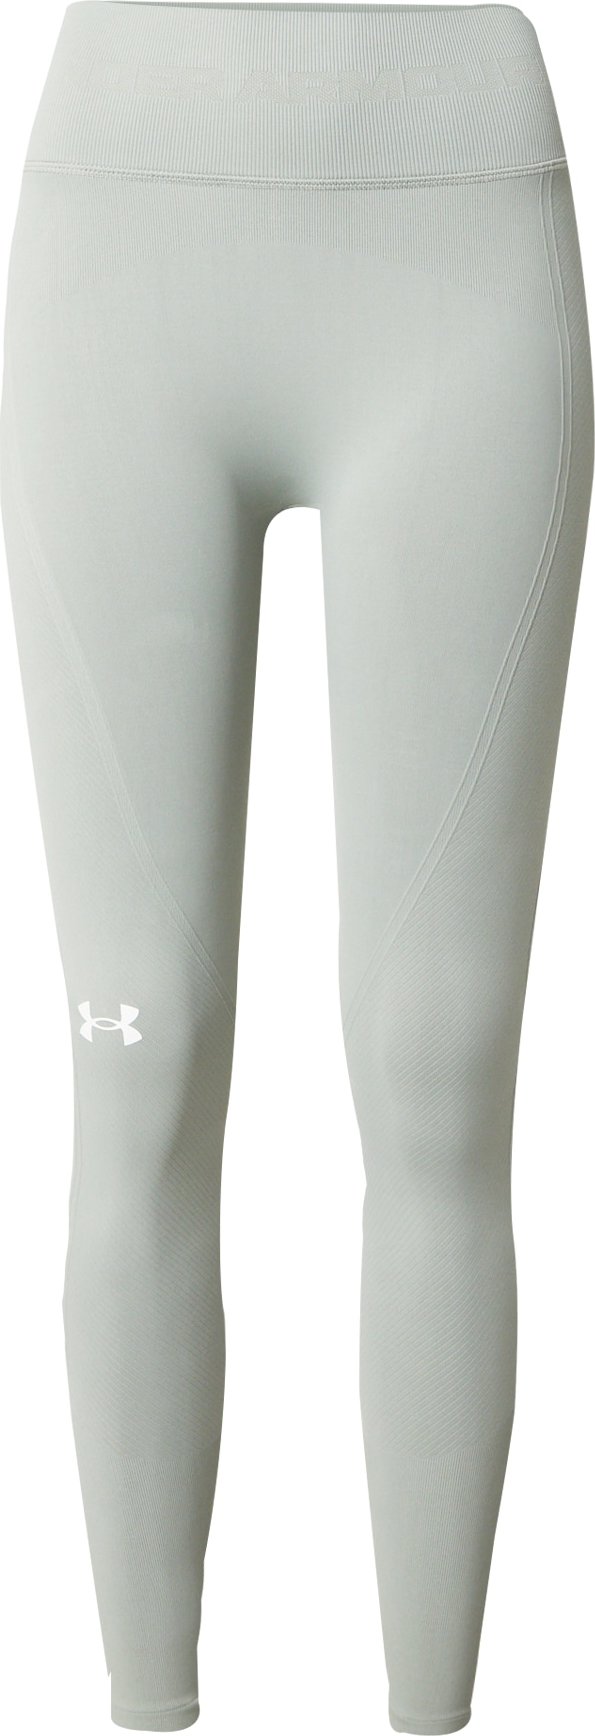 Sportovní kalhoty Under Armour pastelově zelená / bílá